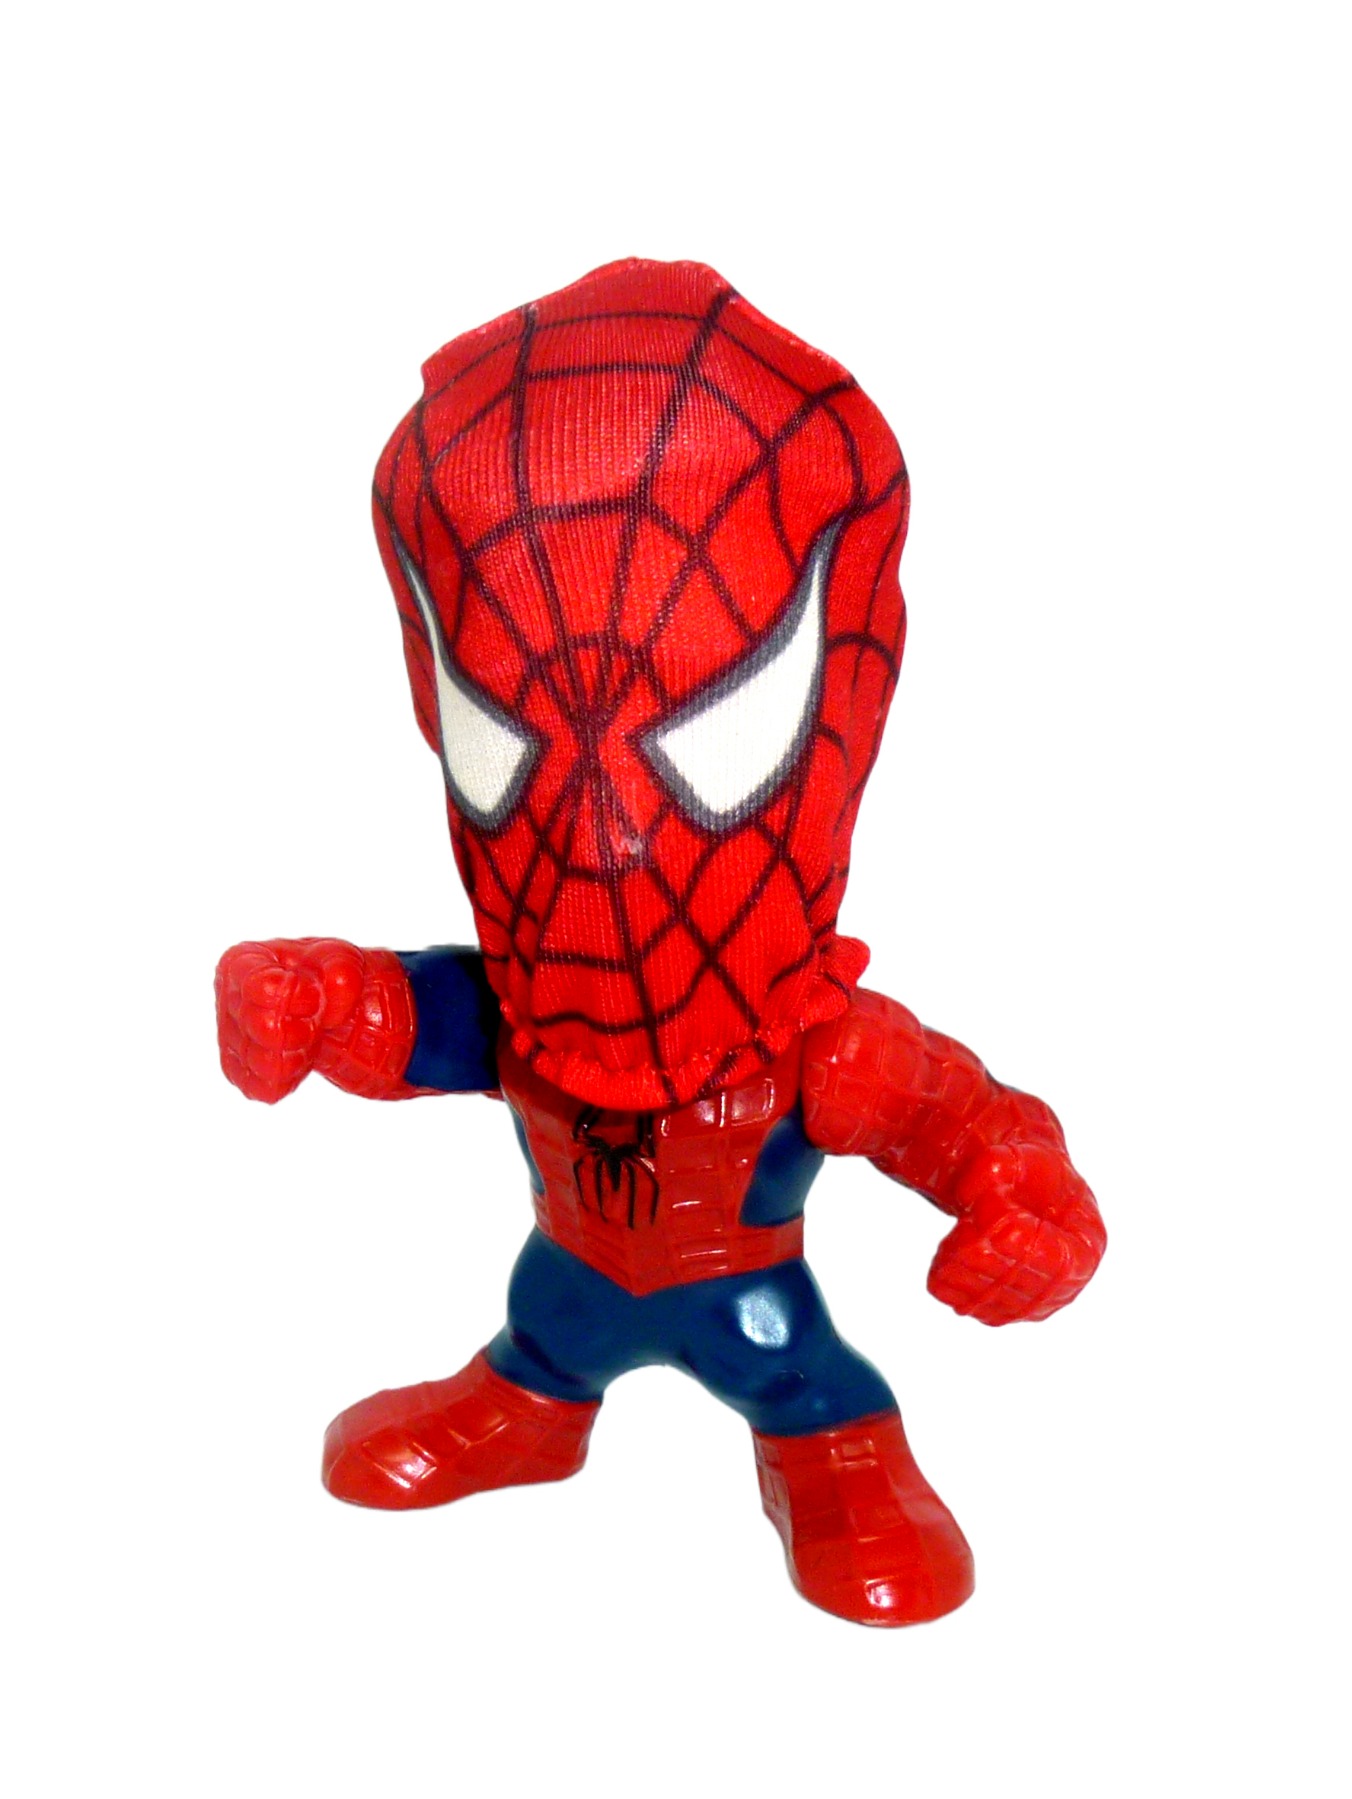 Spider-Man 3 Movie Figur Burger King 2006 2